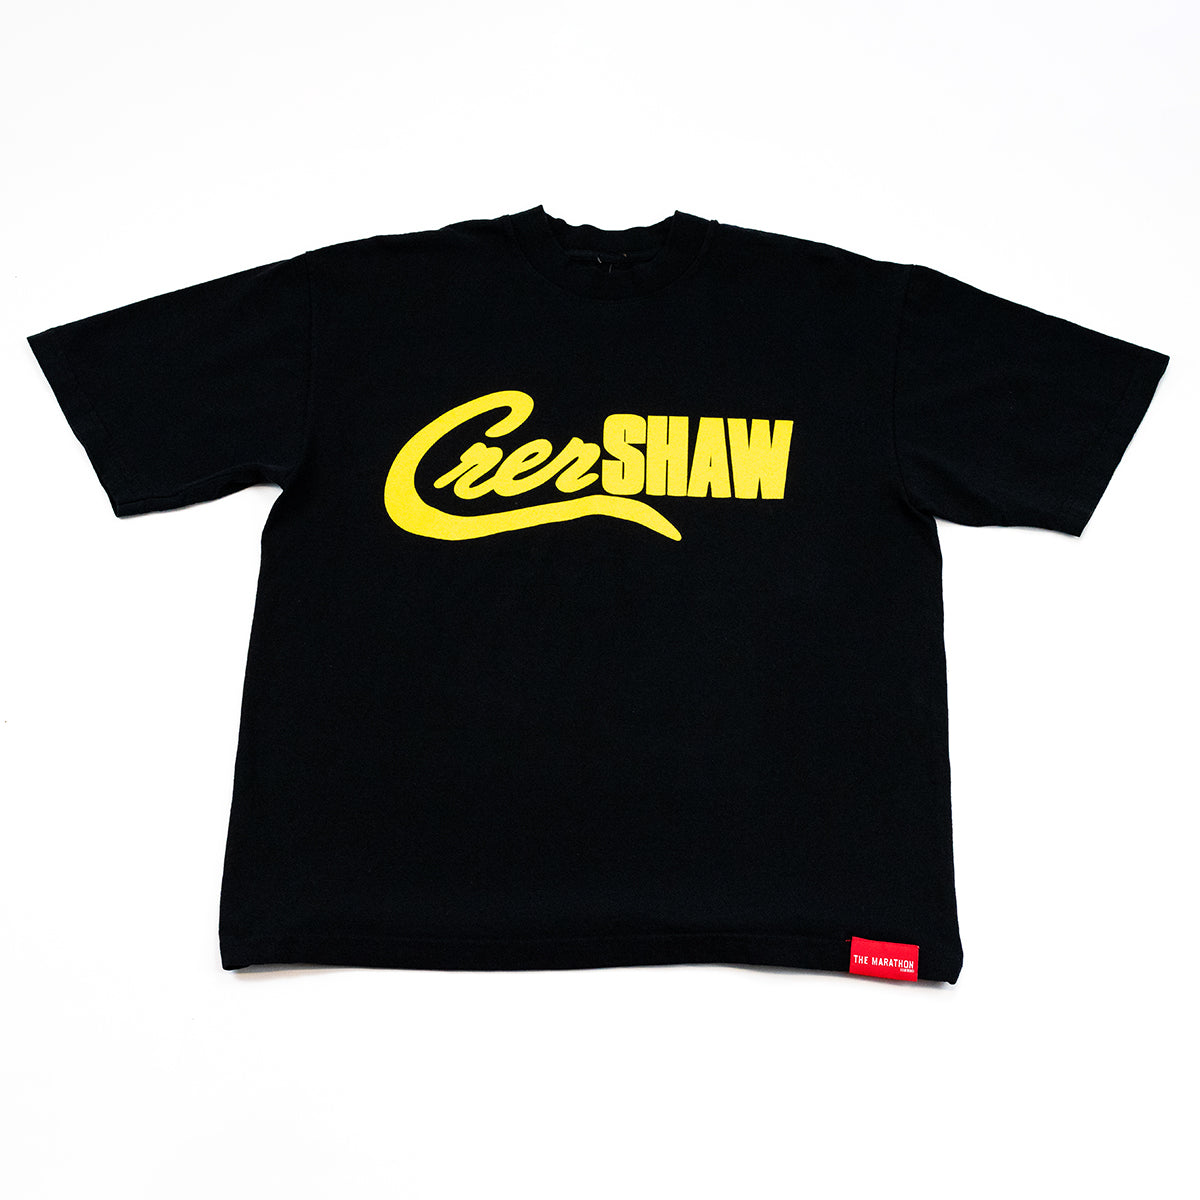 Crenshaw Mashup T-shirt - Black/Safety Yellow